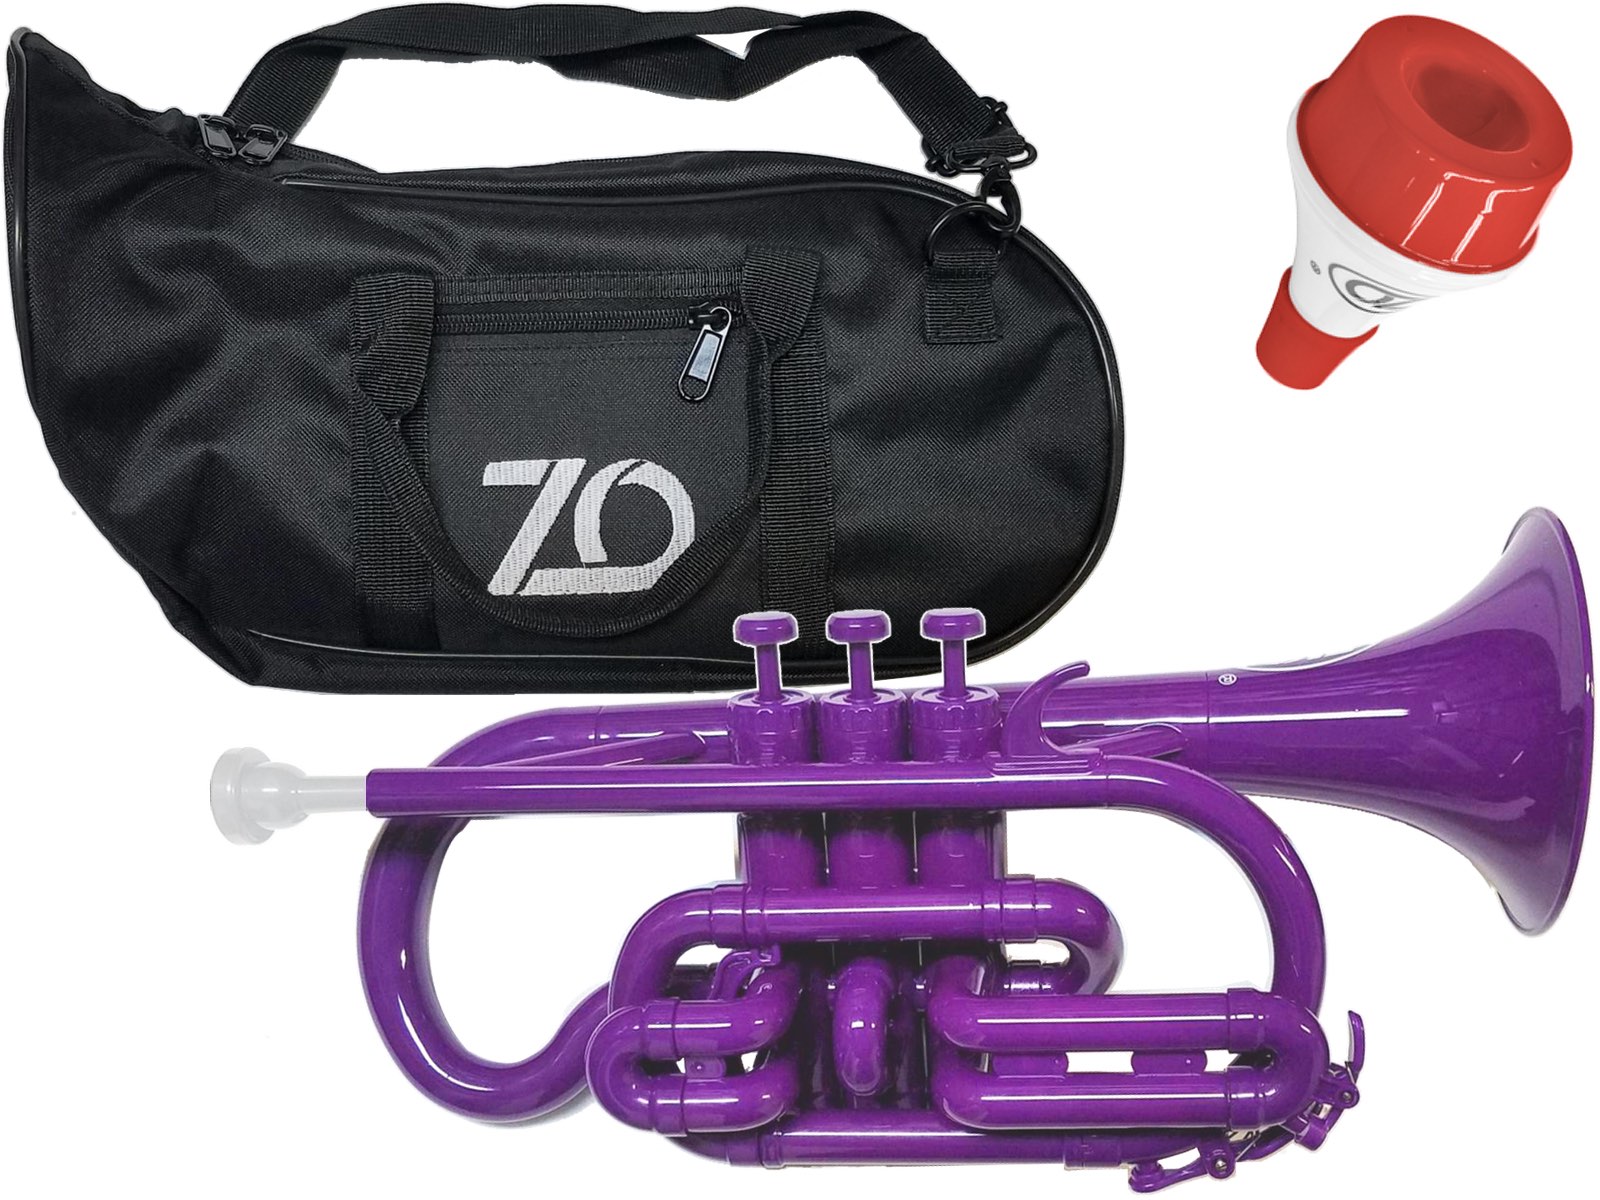 ZO ( ゼットオー ) コルネット CN-04 パープル 調整品 新品 アウトレット プラスチック 管楽器 cornet purple 楽器 …